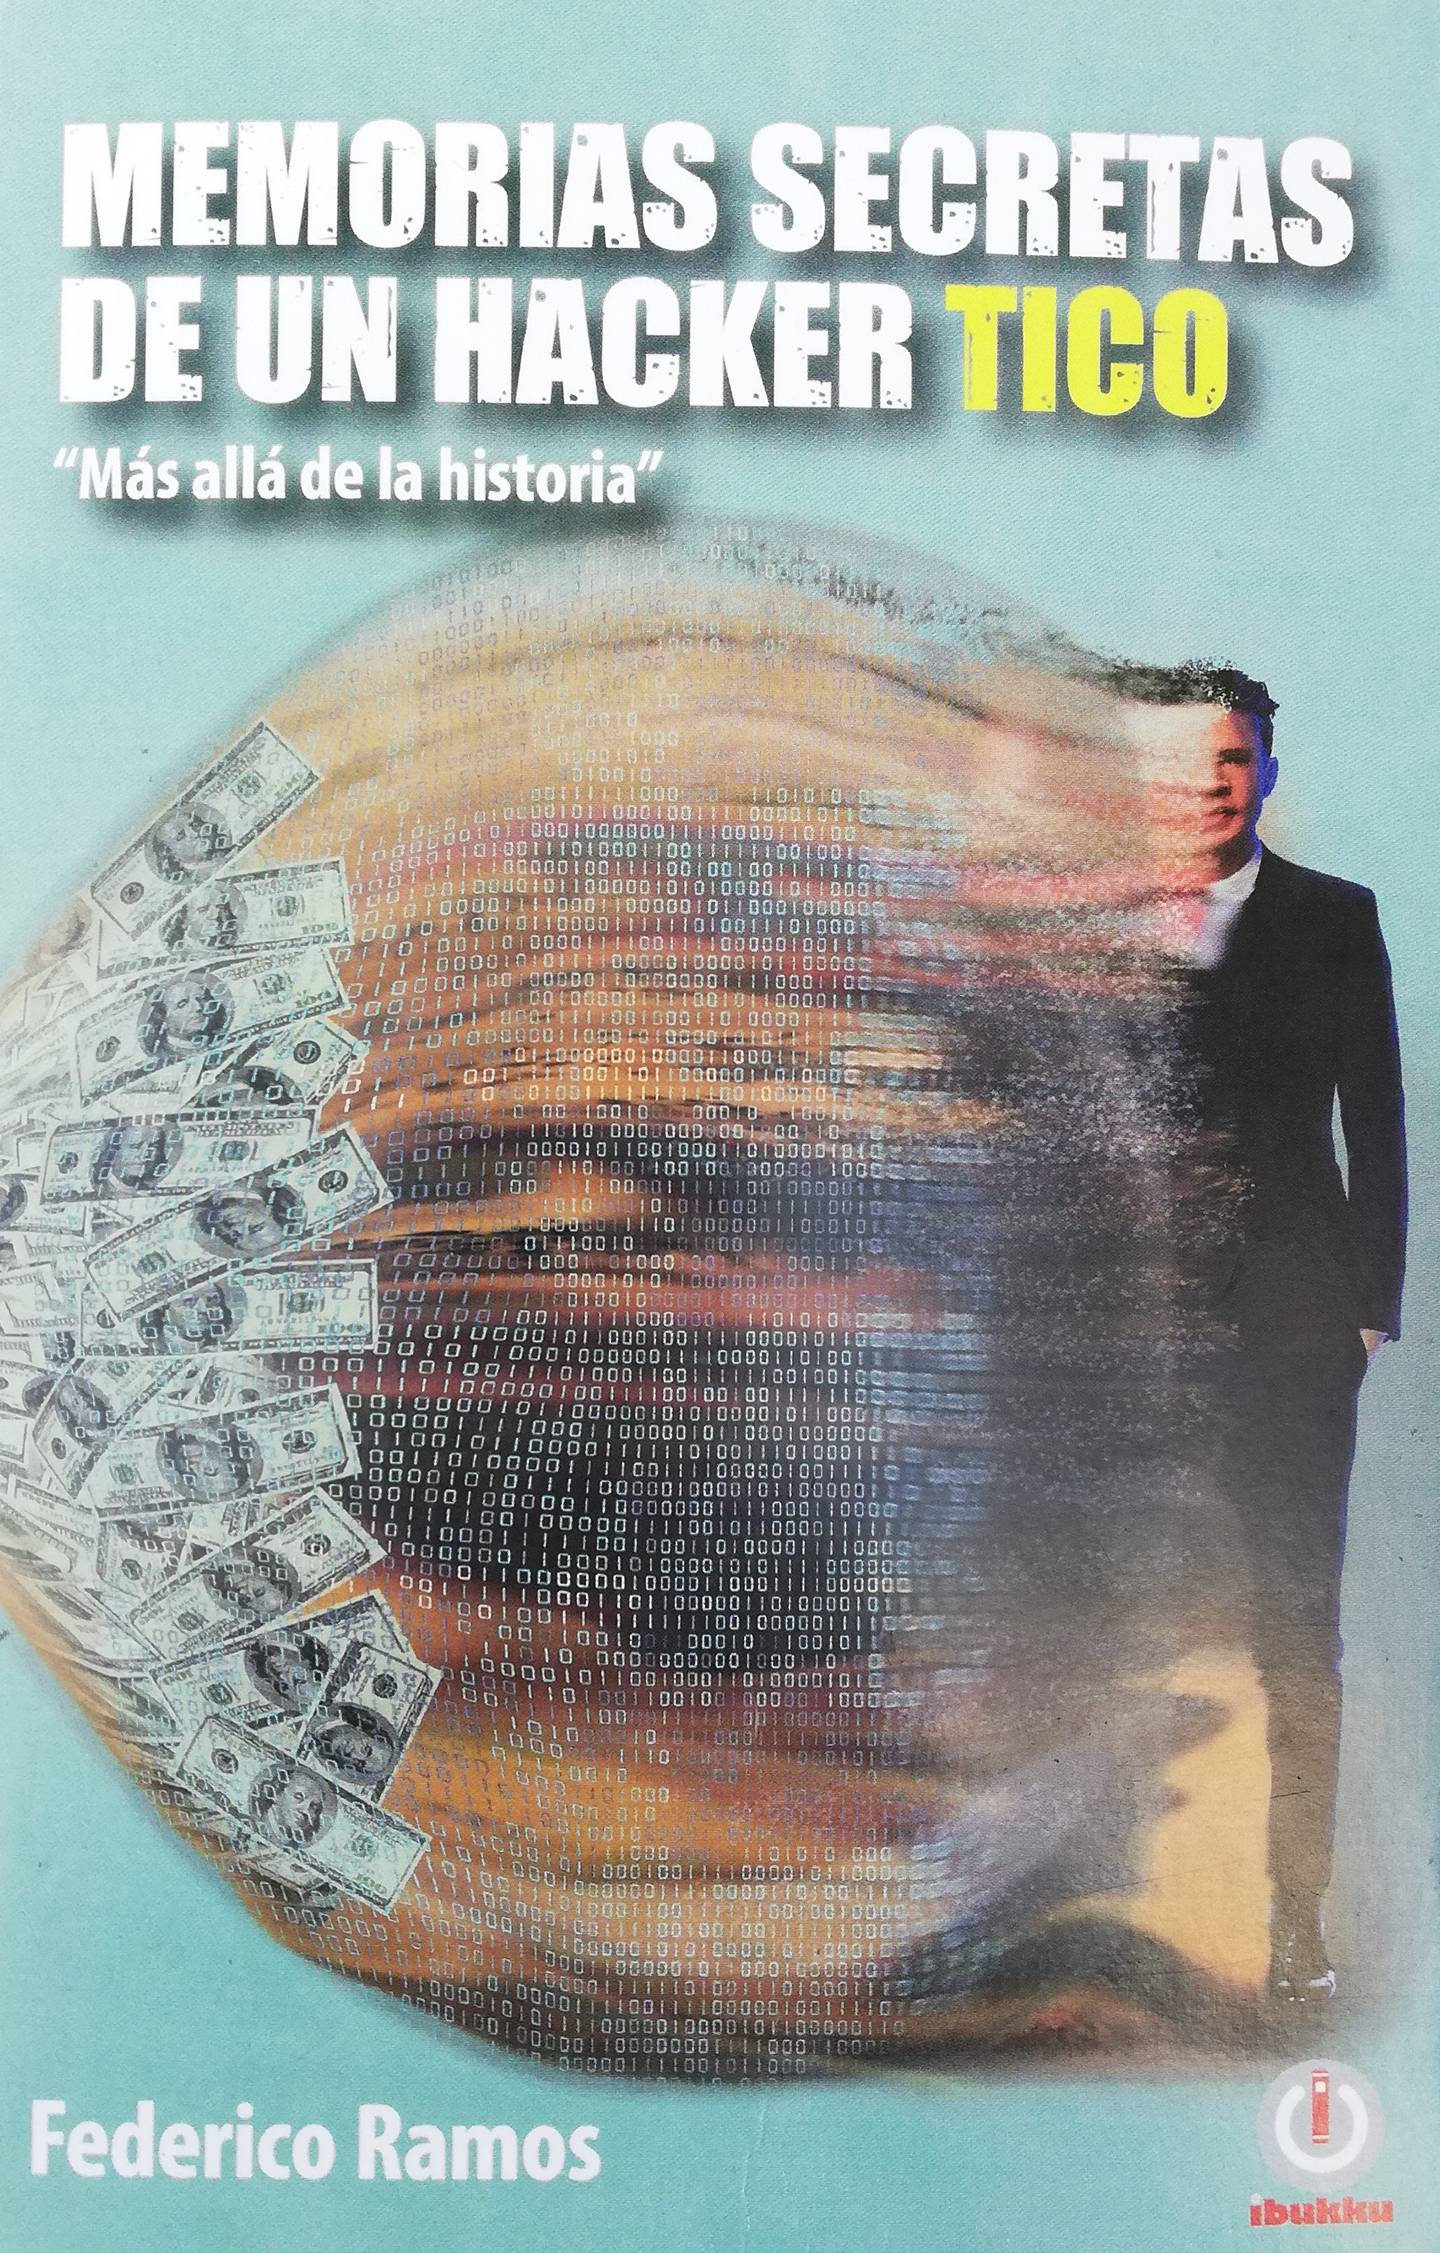 Federico Ramos escribió el libro Memorias secretas de un hacker tico